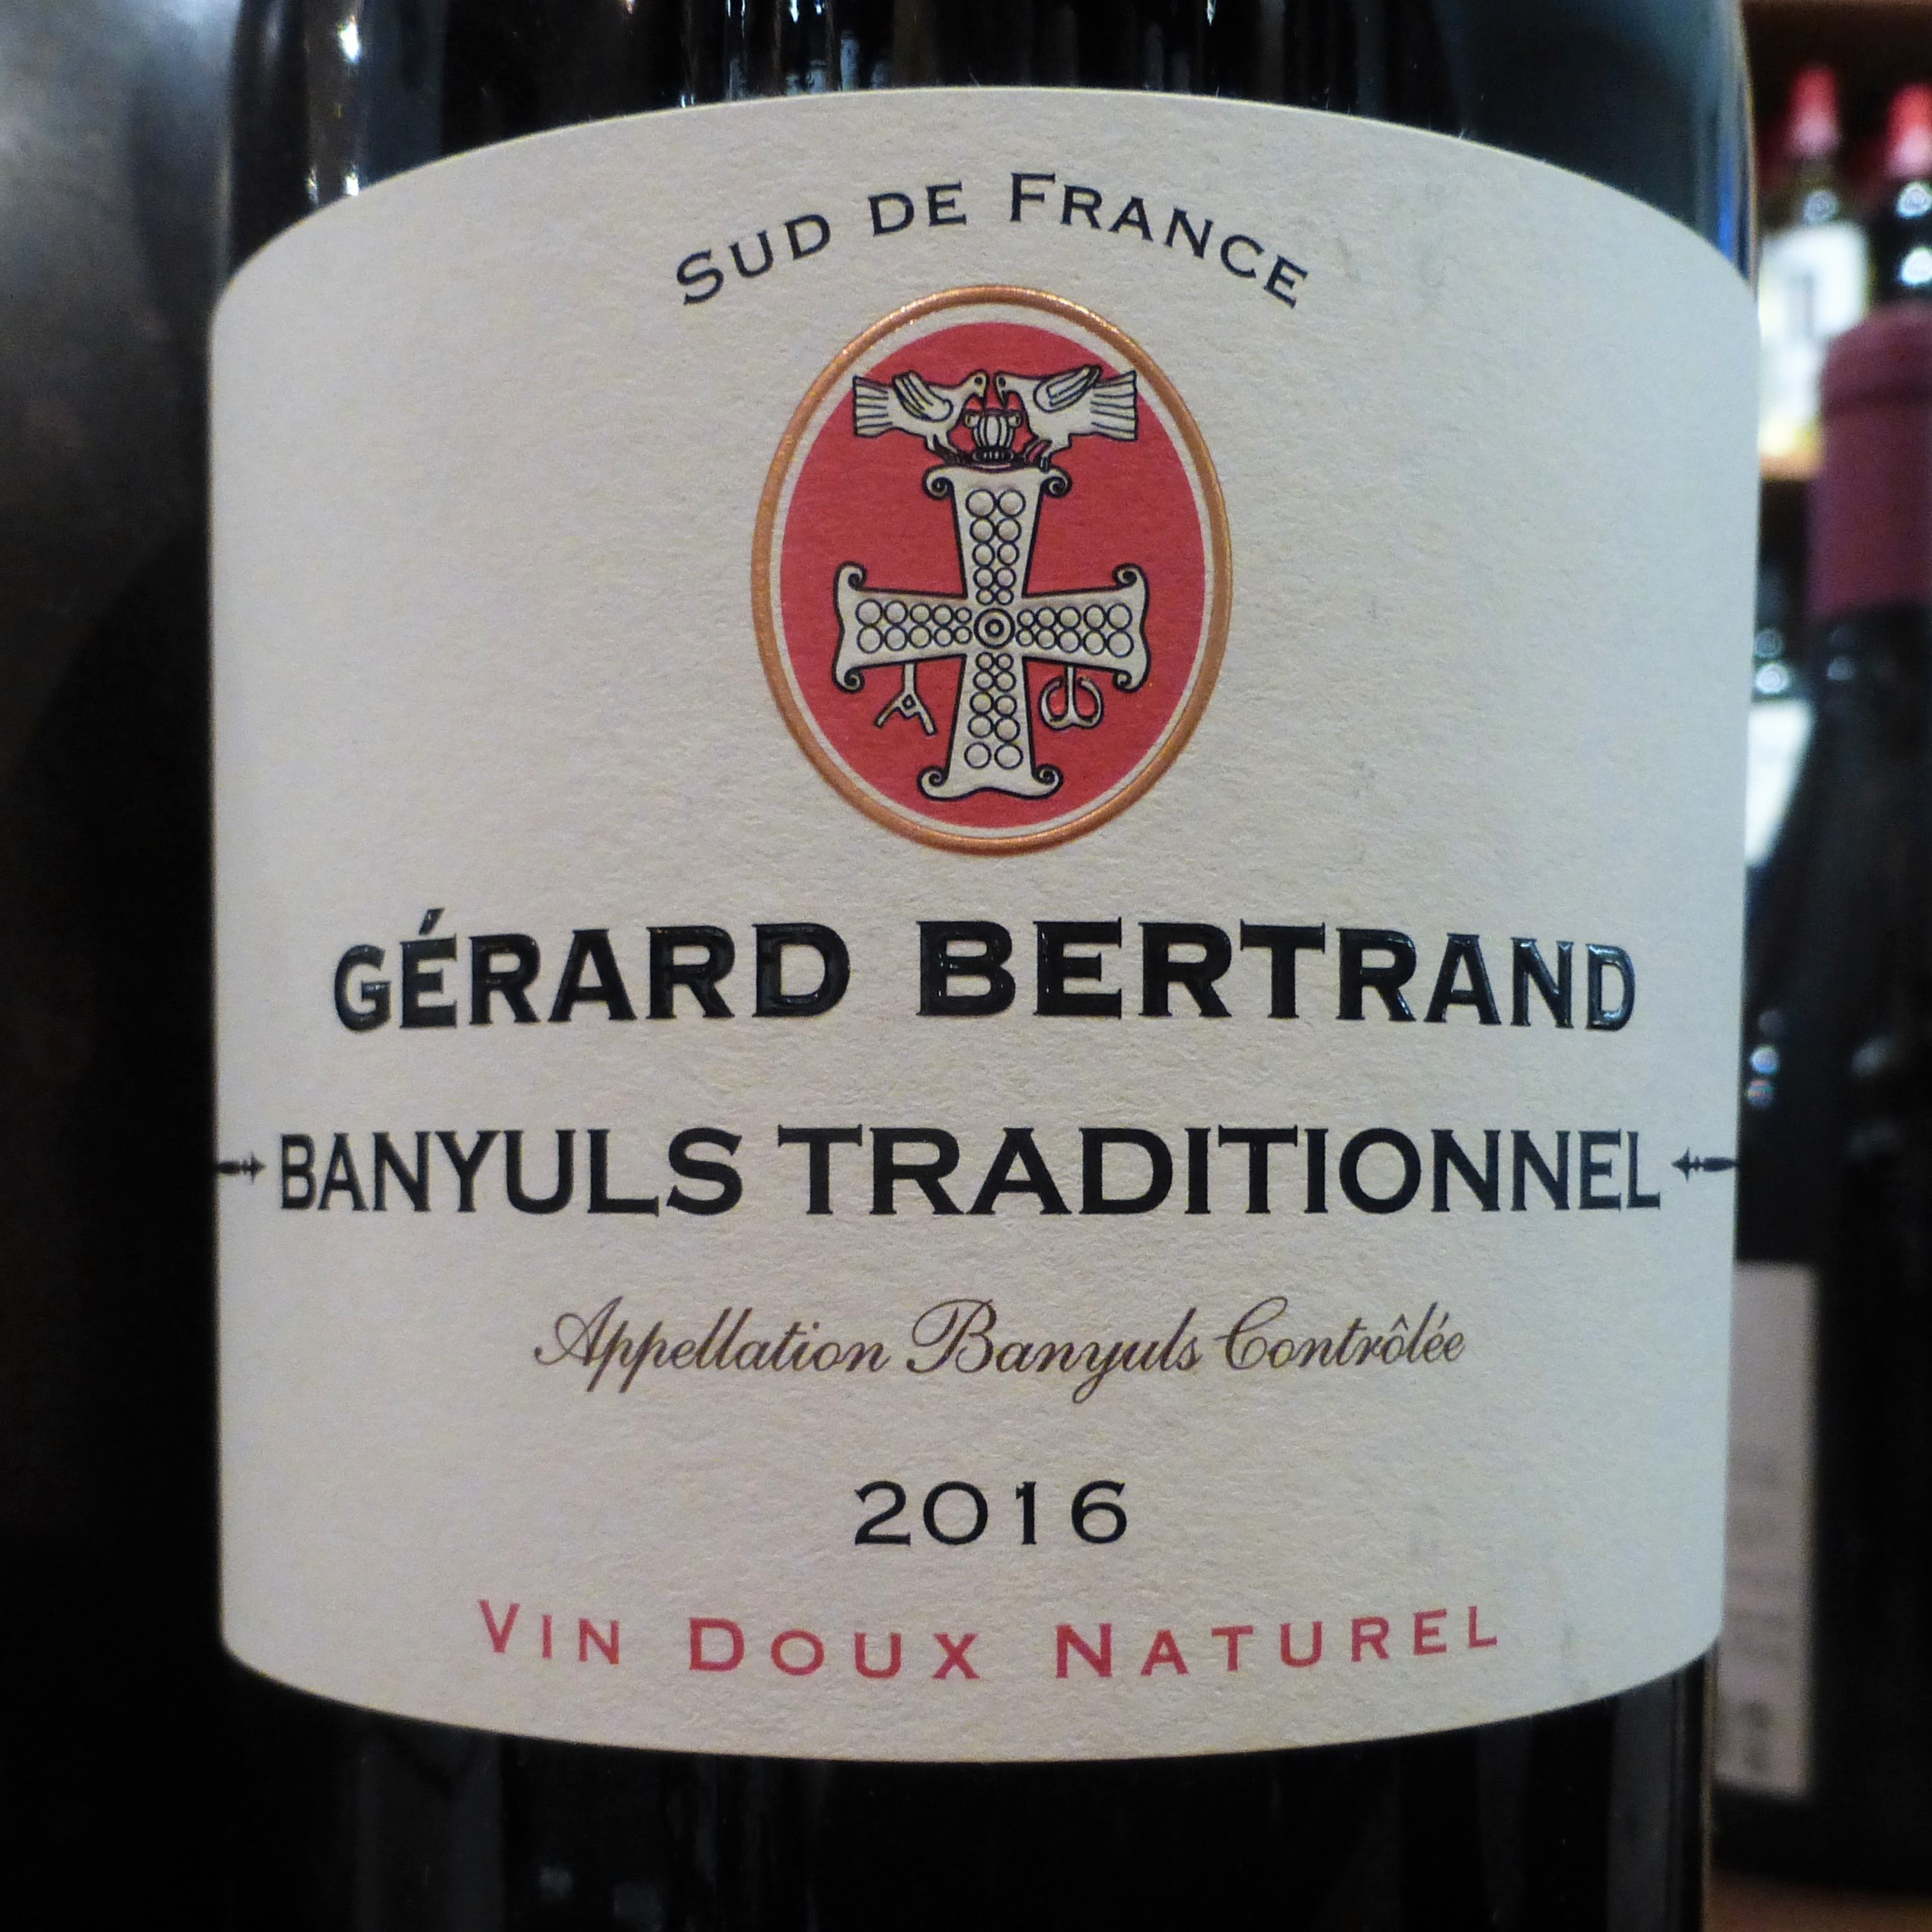 2016 Banyul Vin Doux Naturel, Gérard Bertrand